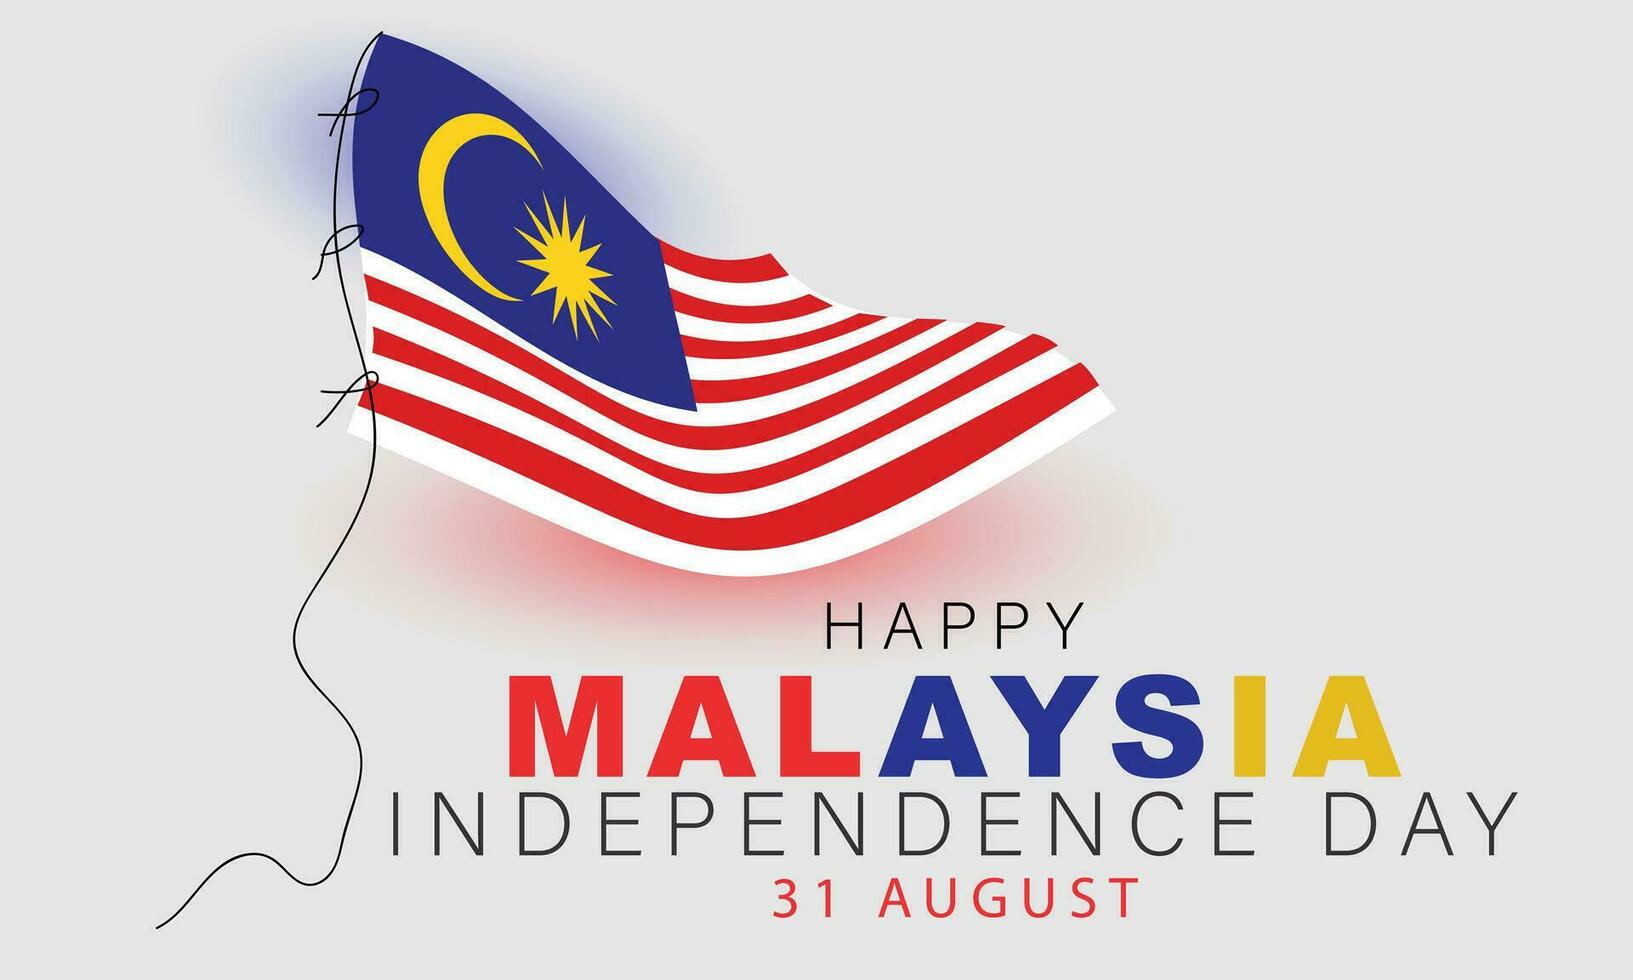 Malaisie indépendance journée. arrière-plan, bannière, carte, affiche, modèle. vecteur illustration.